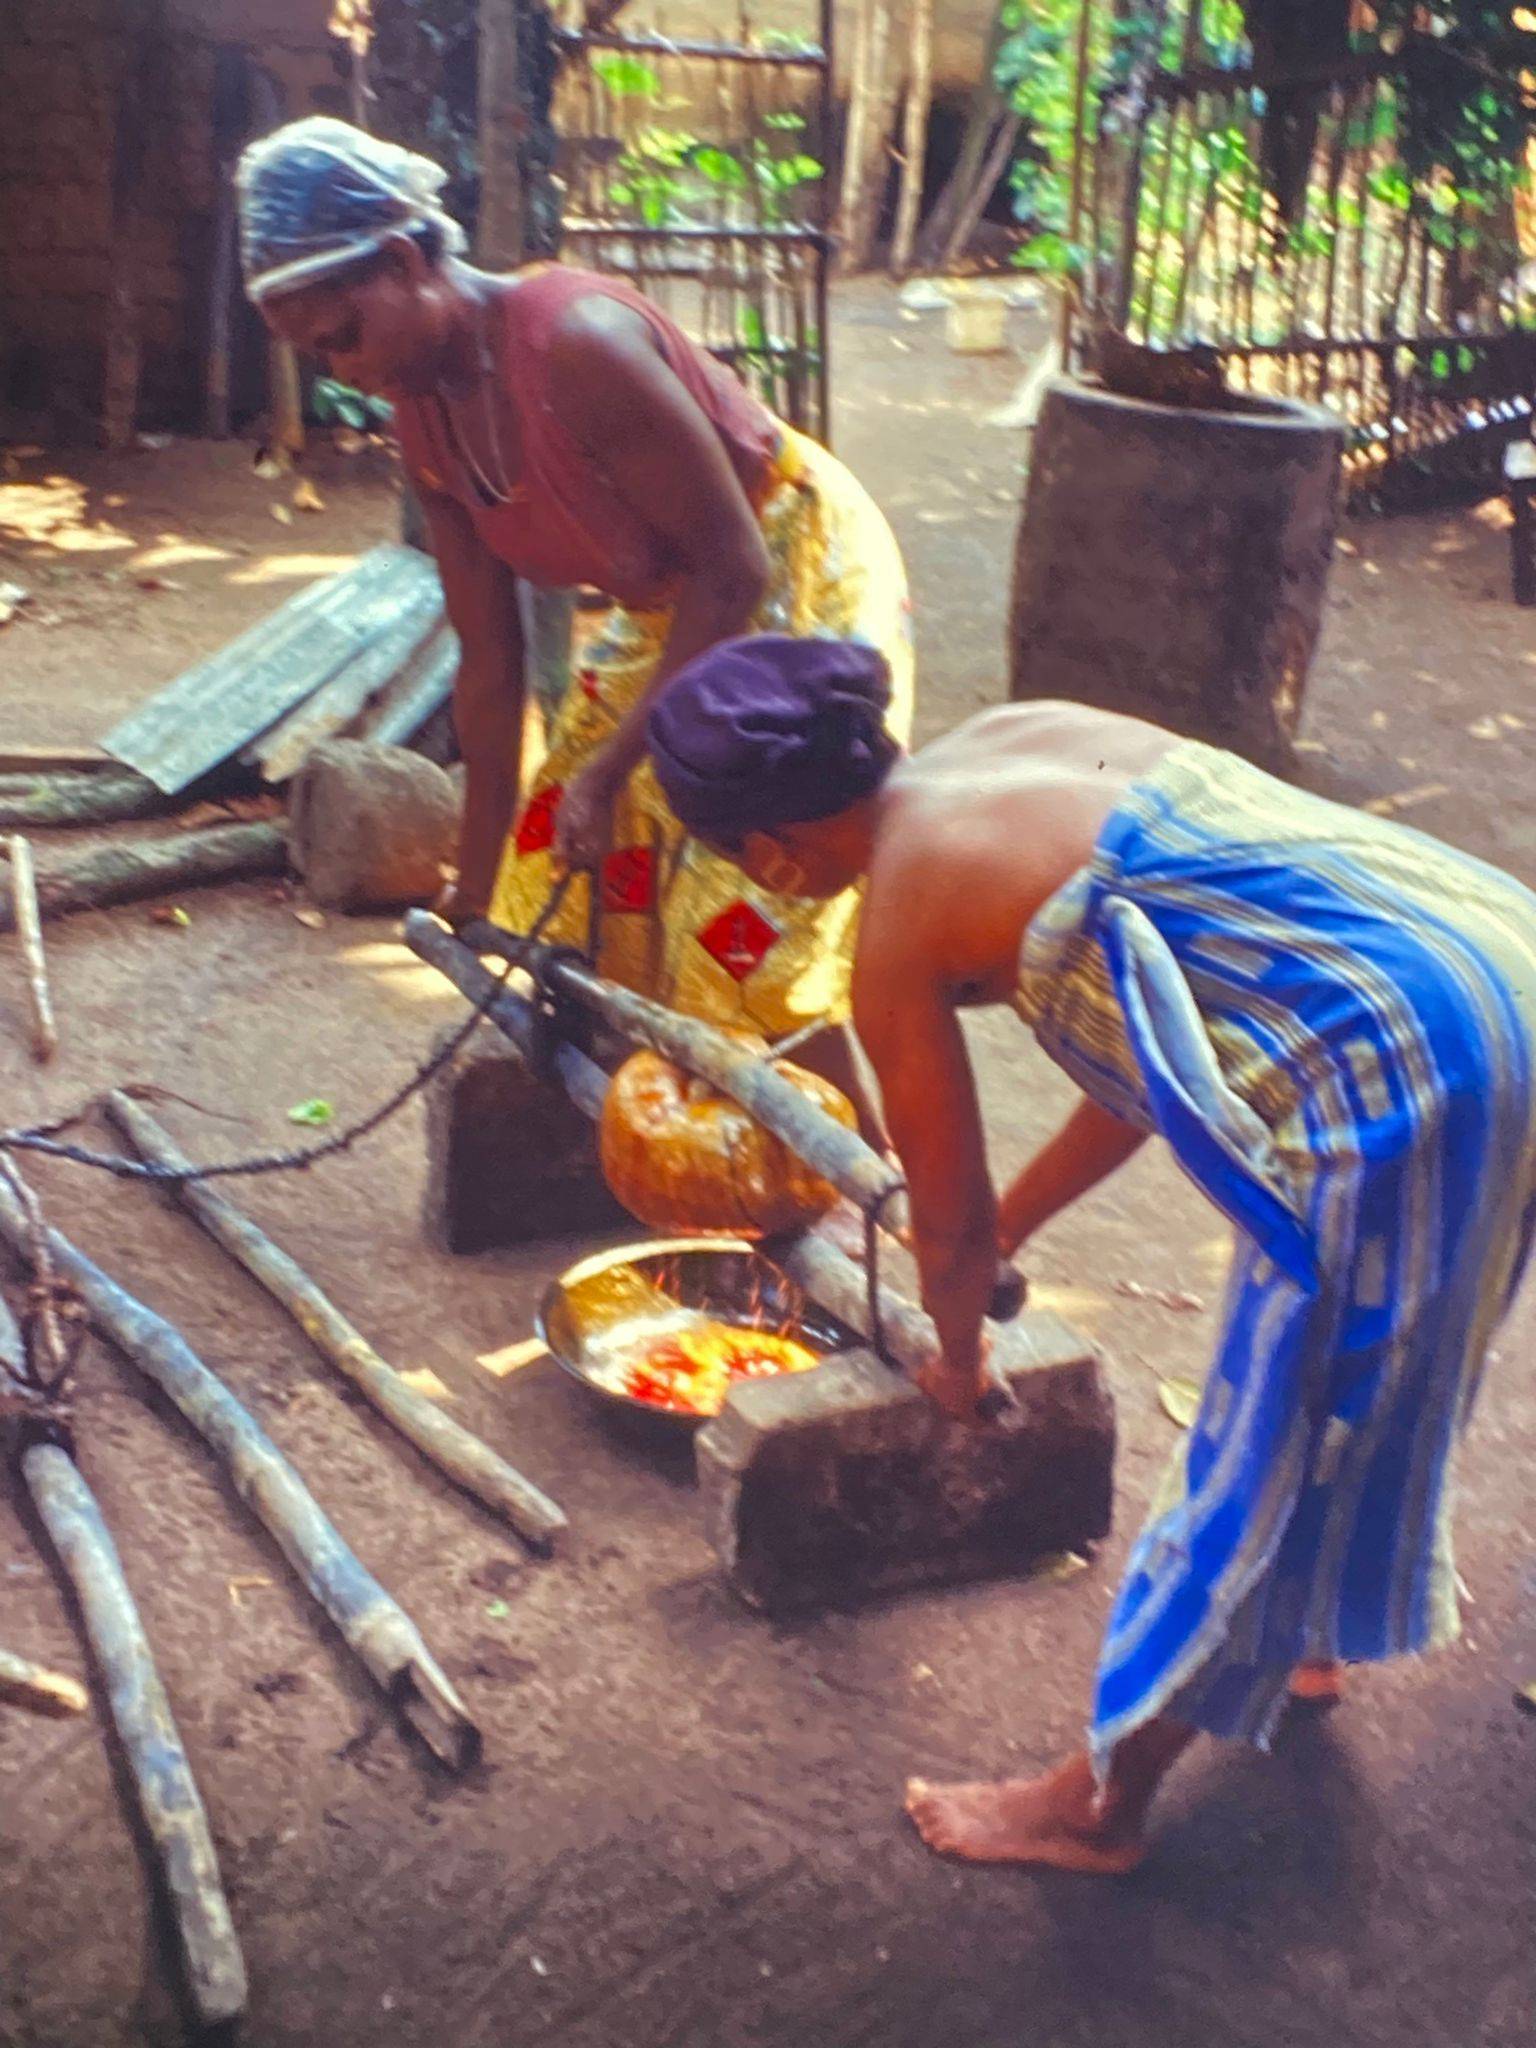 Zwei Frauen pressen gekochte Palmfasern in einer selbstgemachten Maschine, das freigesetzte Palmöl sammelt sich in einer darunter stehenden Schüssel.